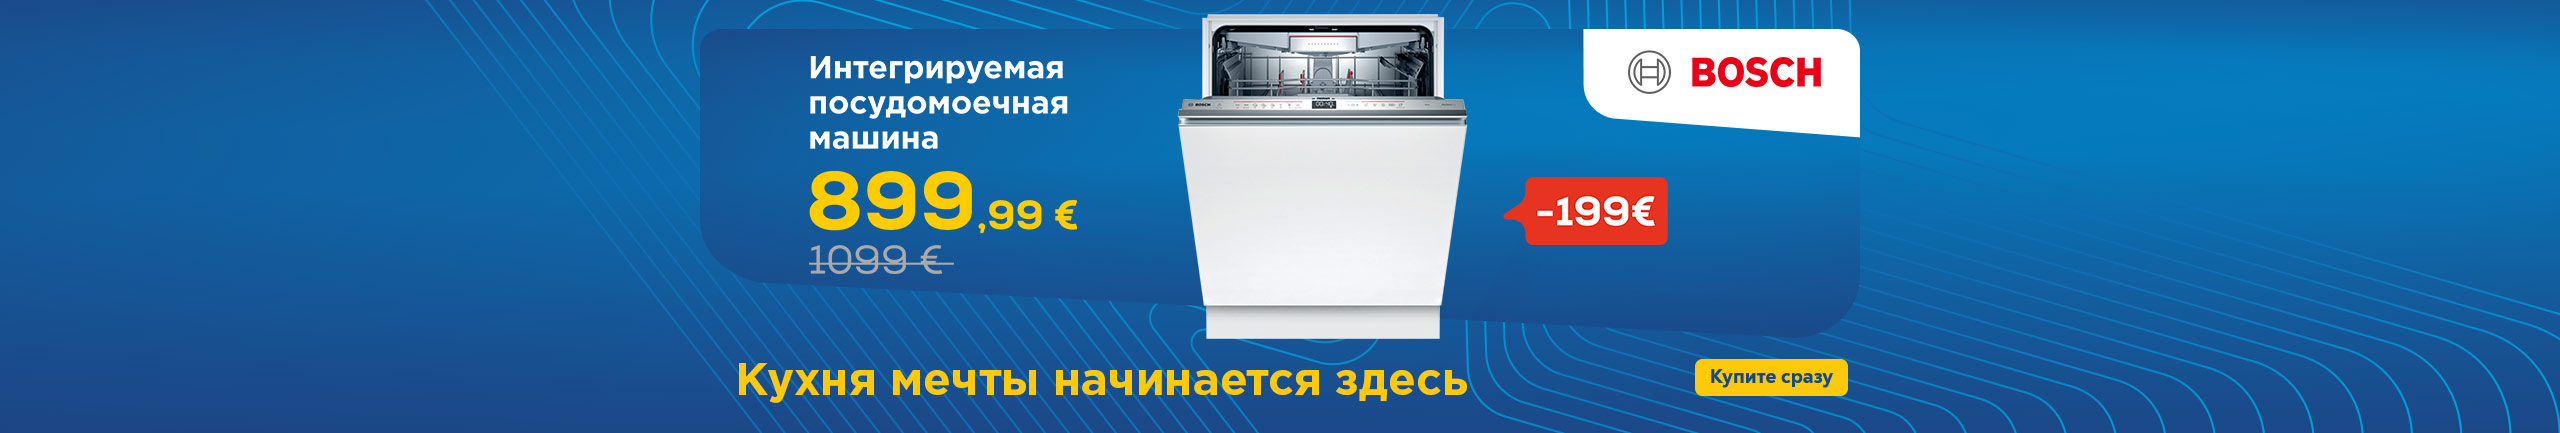 Интегрируемая посудомоечная машина Bosch